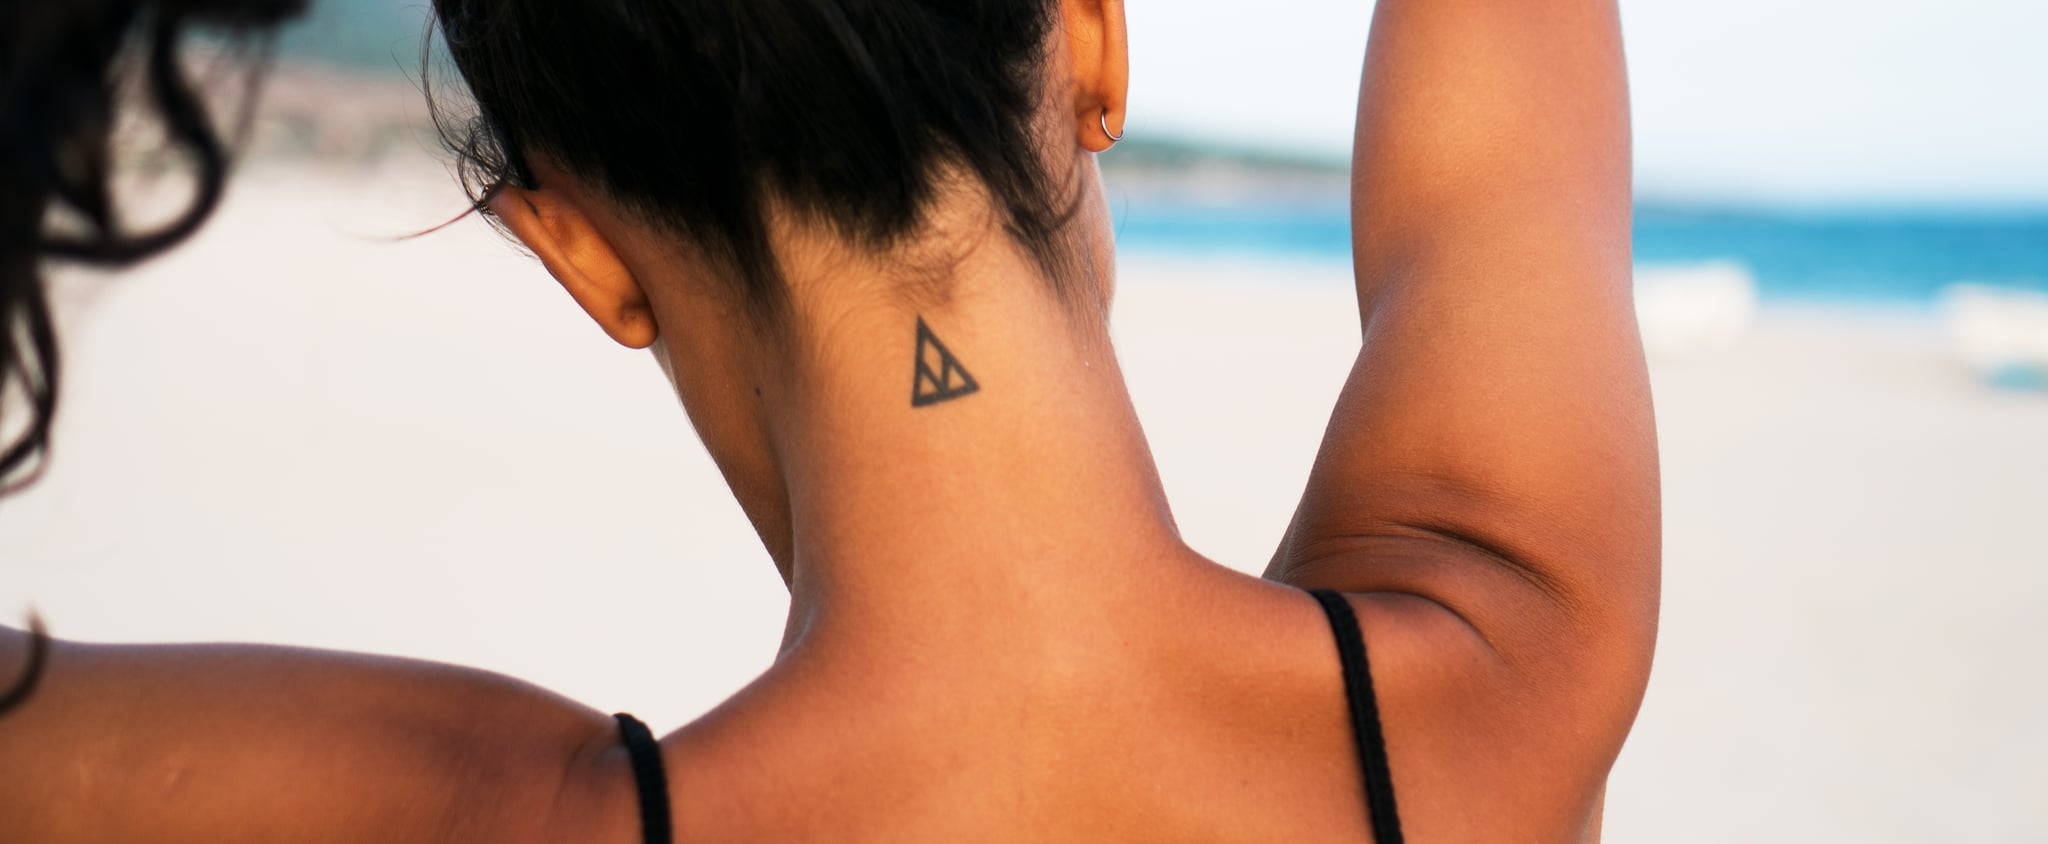 92 Best Letter Tattoos On Neck  Tattoo Designs  TattoosBagcom